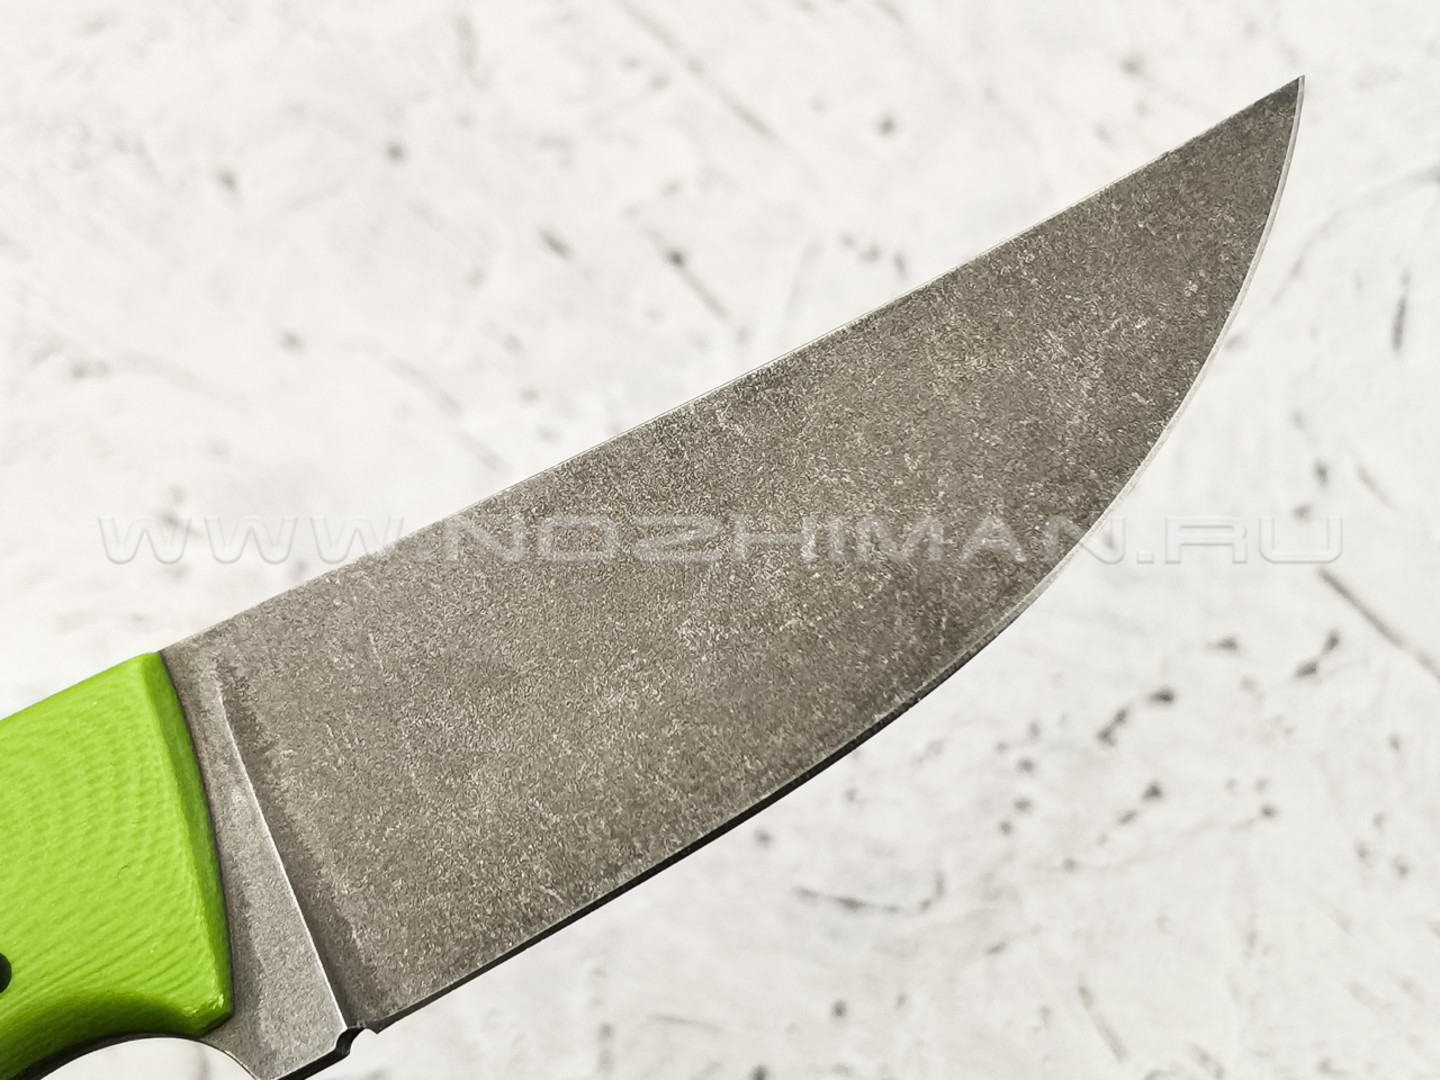 Apus Knives нож Thorn сталь K110, рукоять G10 green